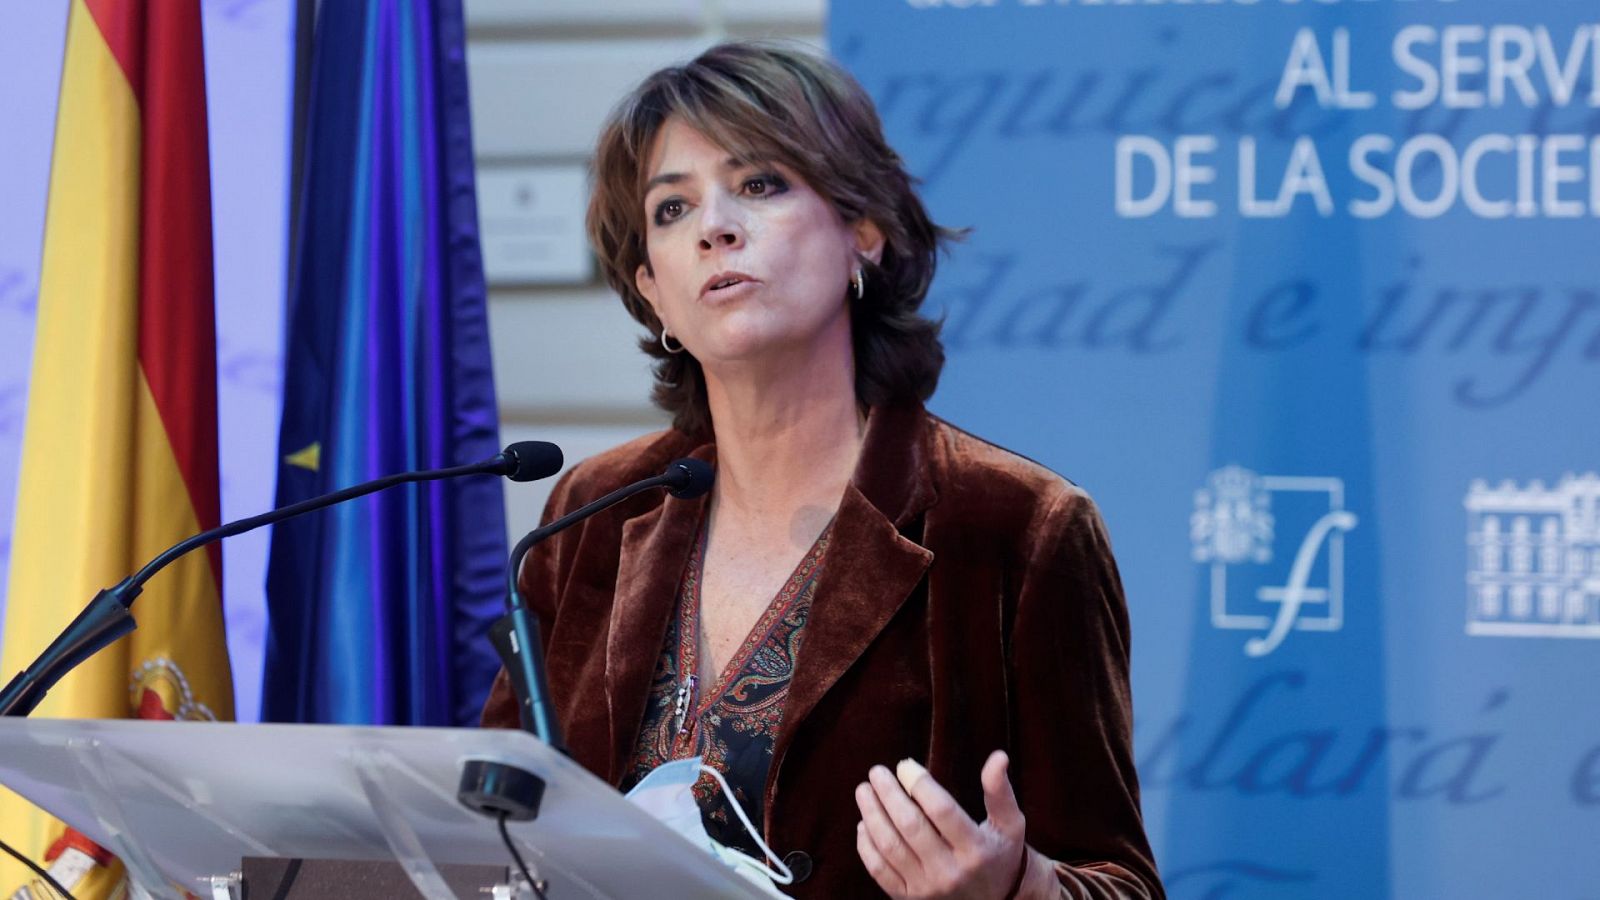 La Asociación de Fiscales pide la dimisión de Dolores Delgado